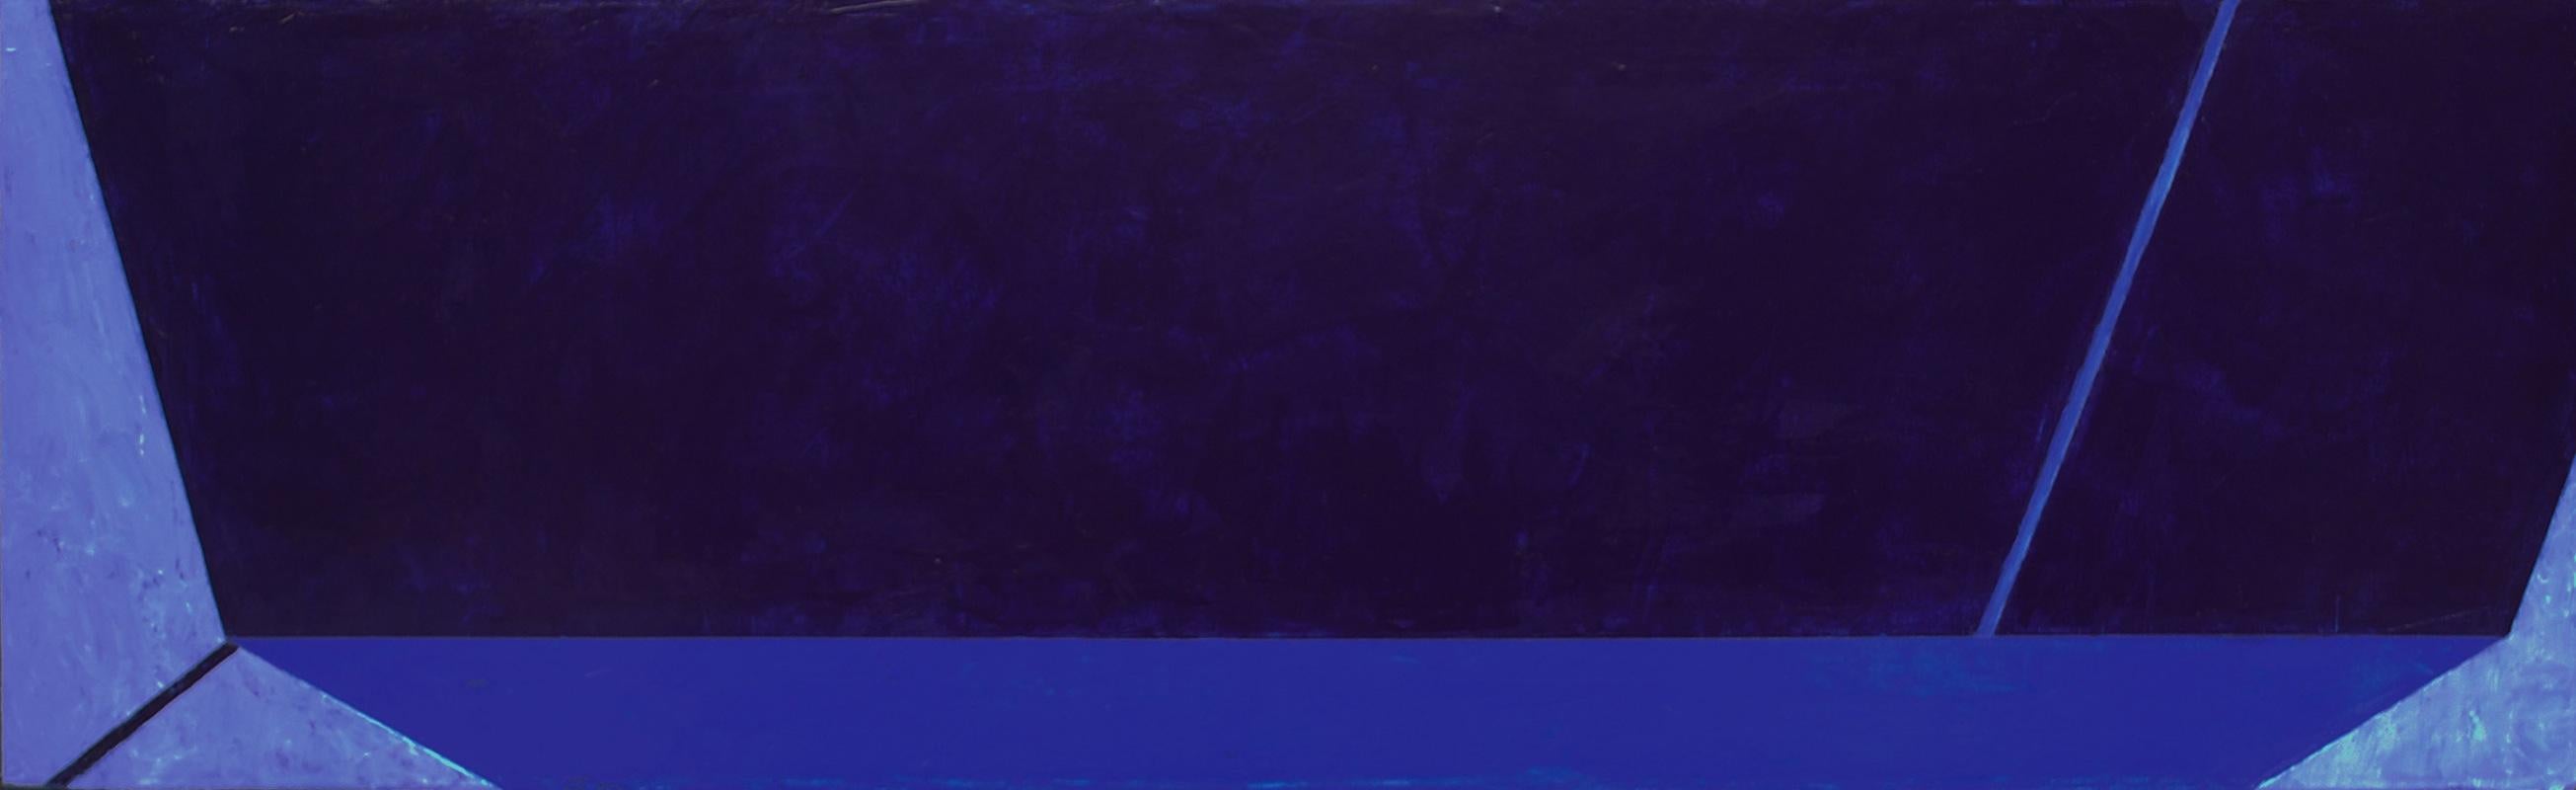 Macyn Bolt, O to C, 2018, Minimalist, acrylic on canvas, 20 x 24 x 2 inches For Sale 6